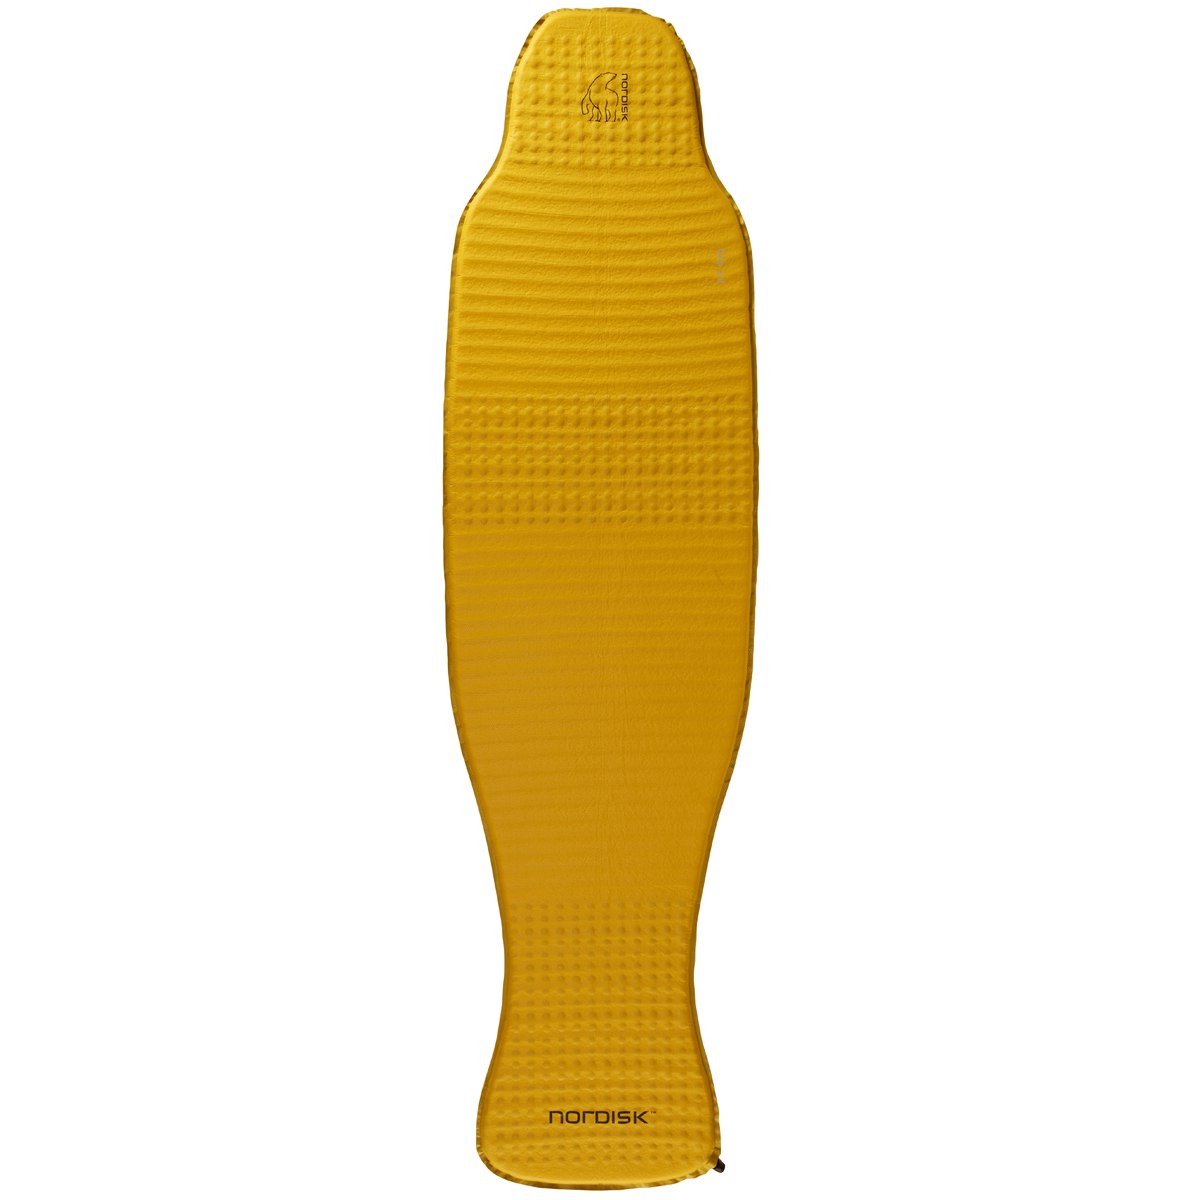 Image of Nordisk Grip 3.8 Large Sleeping Pad - Mustard Yellow/Black